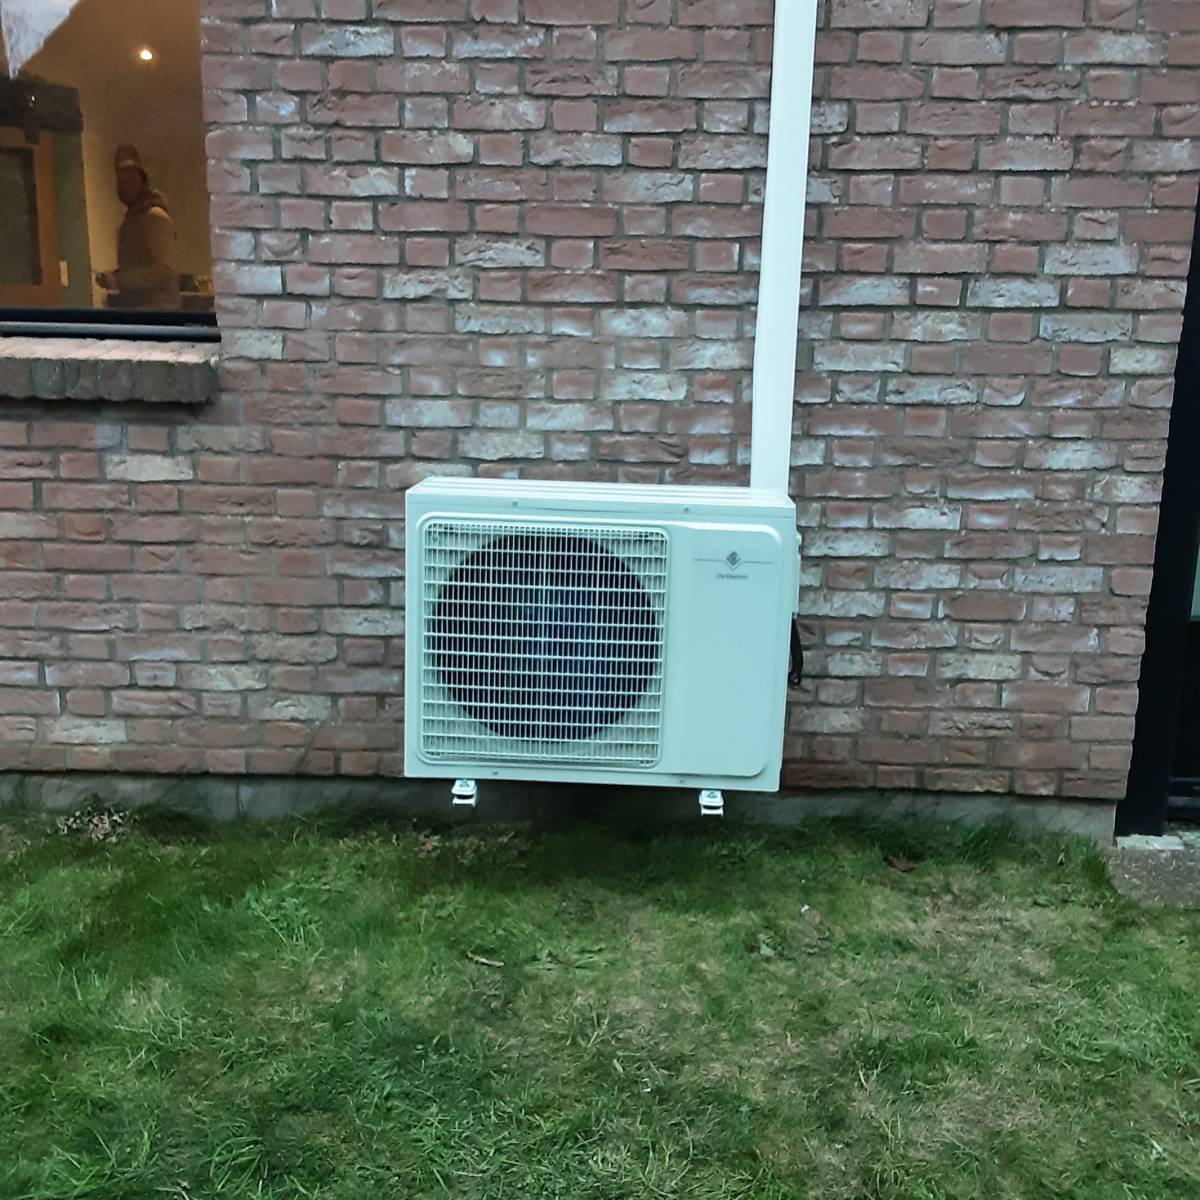 Unité extérieure de la pompe à chaleur air-air située à l'extérieur d'une résidence à Liévin, essentielle pour le transfert efficace de l'air chaud et froid.